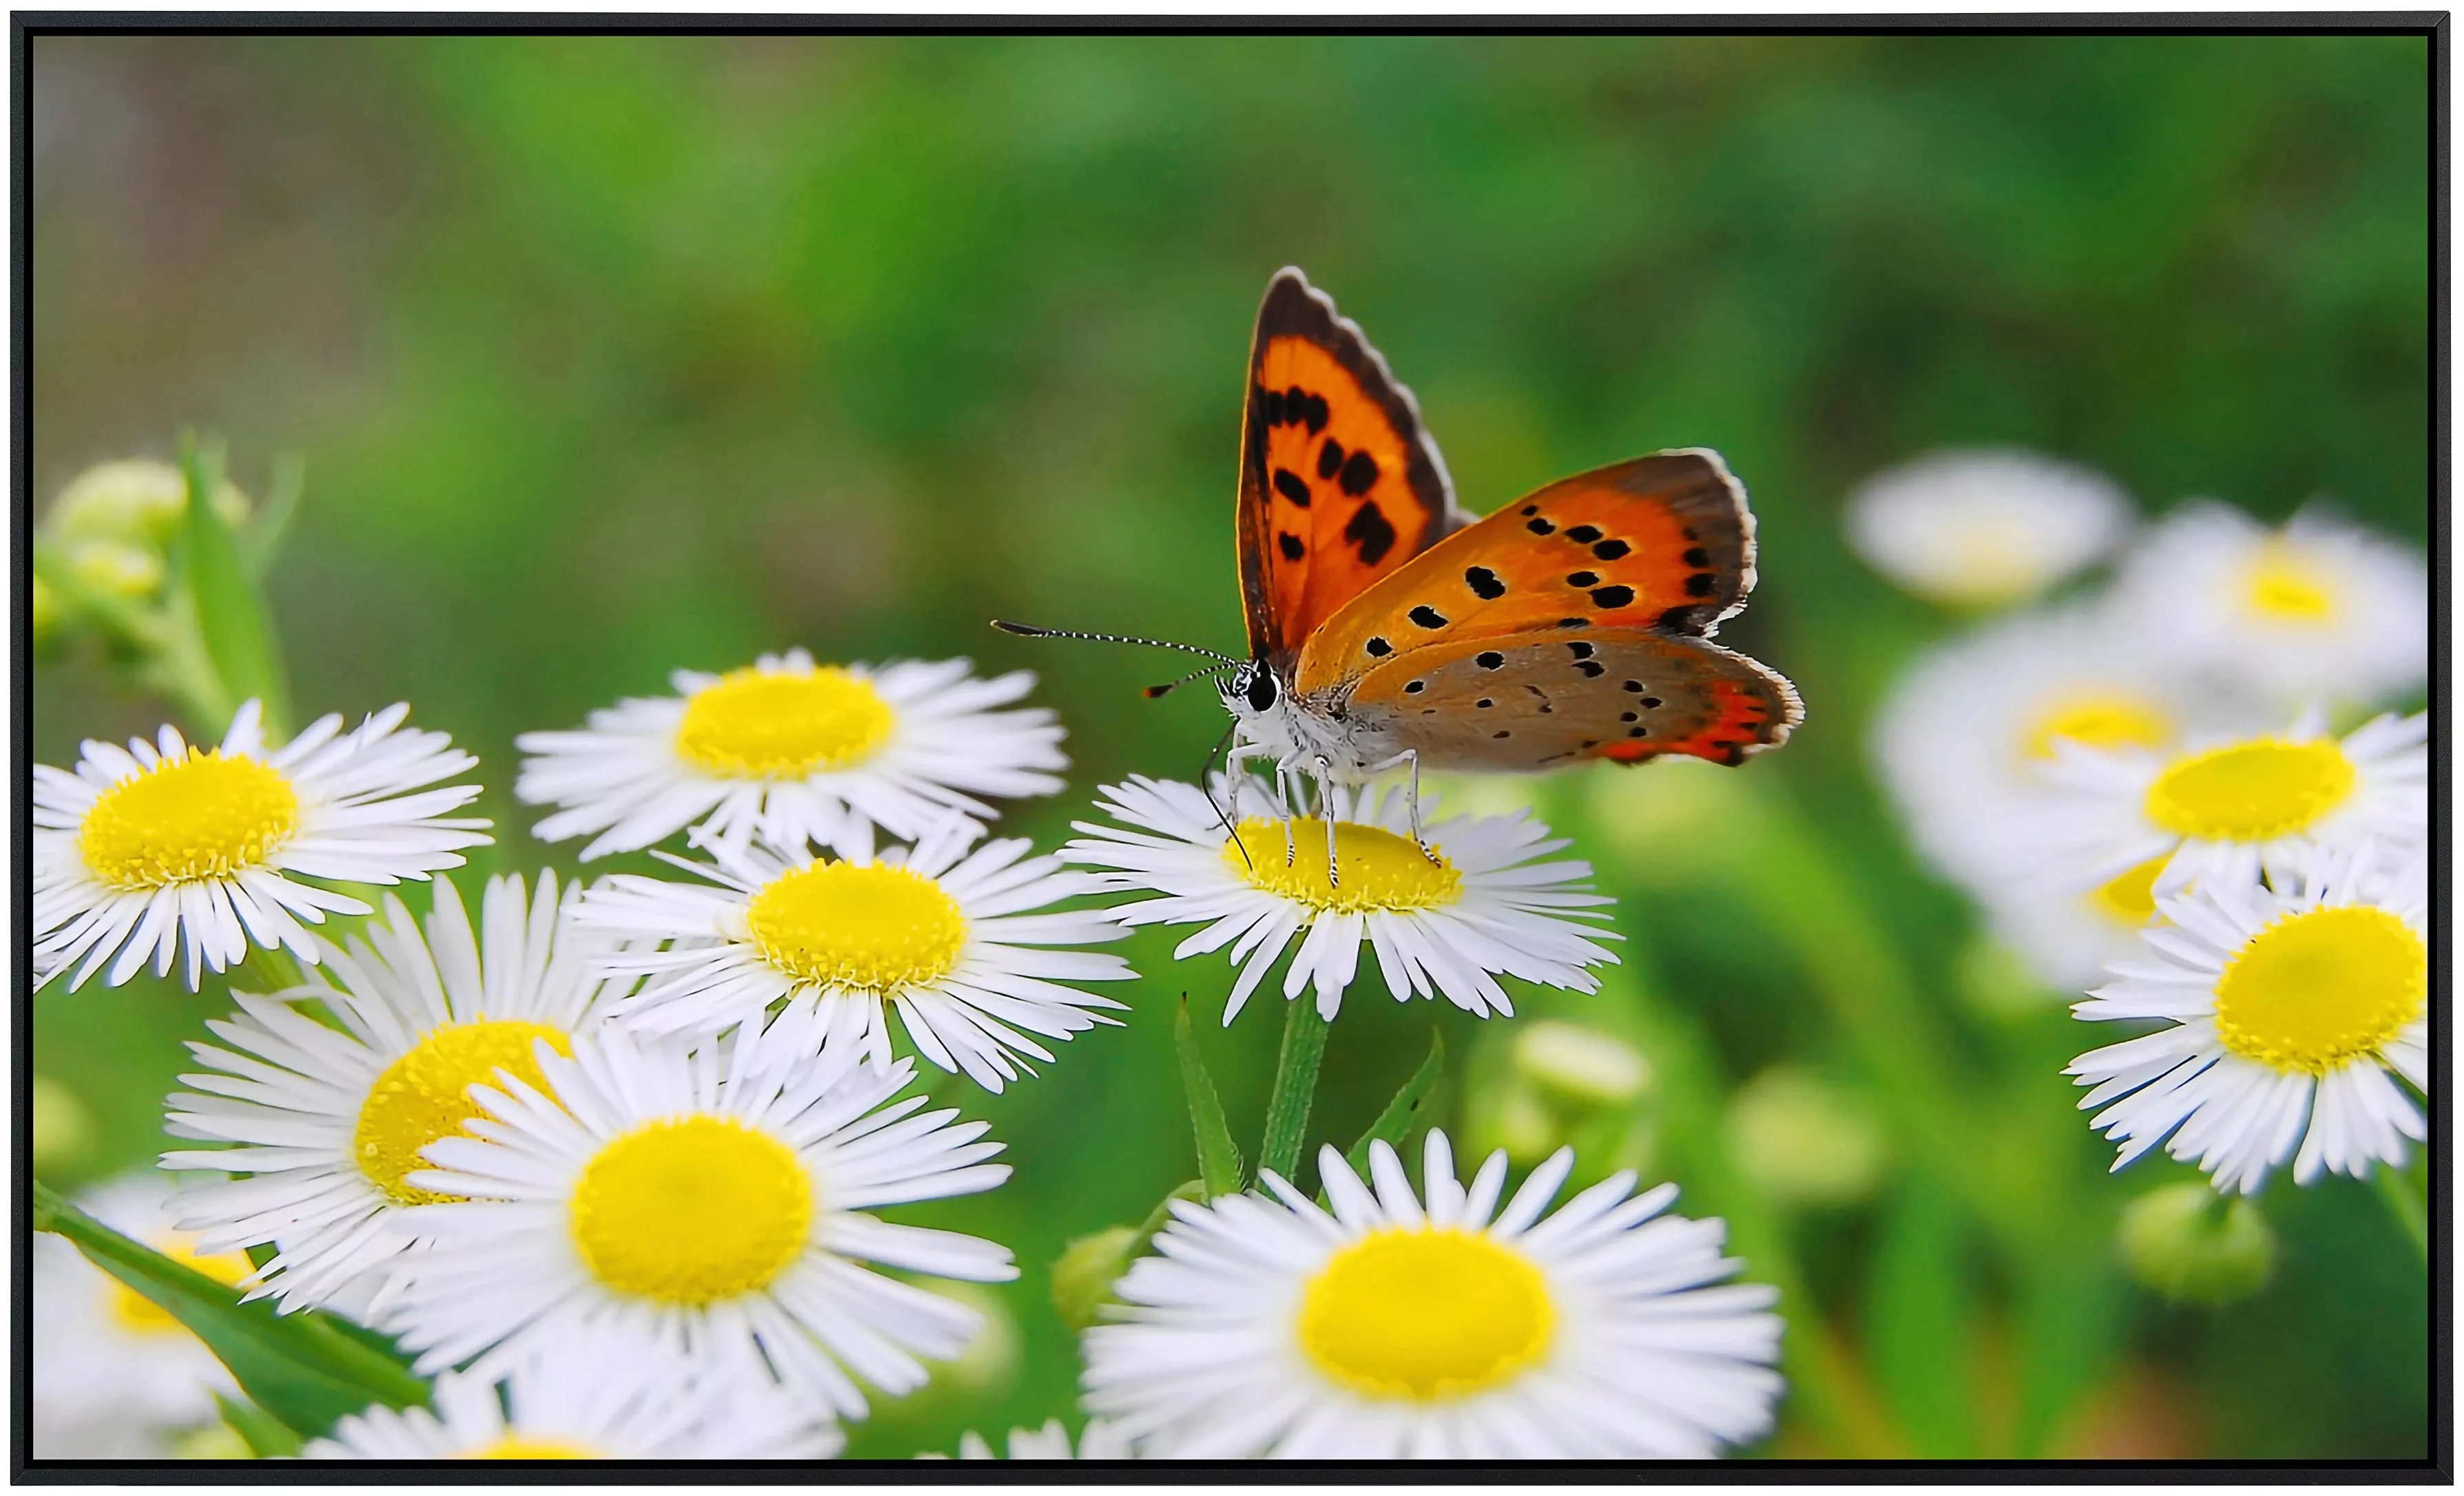 Papermoon Infrarotheizung »Schmetterling«, sehr angenehme Strahlungswärme günstig online kaufen